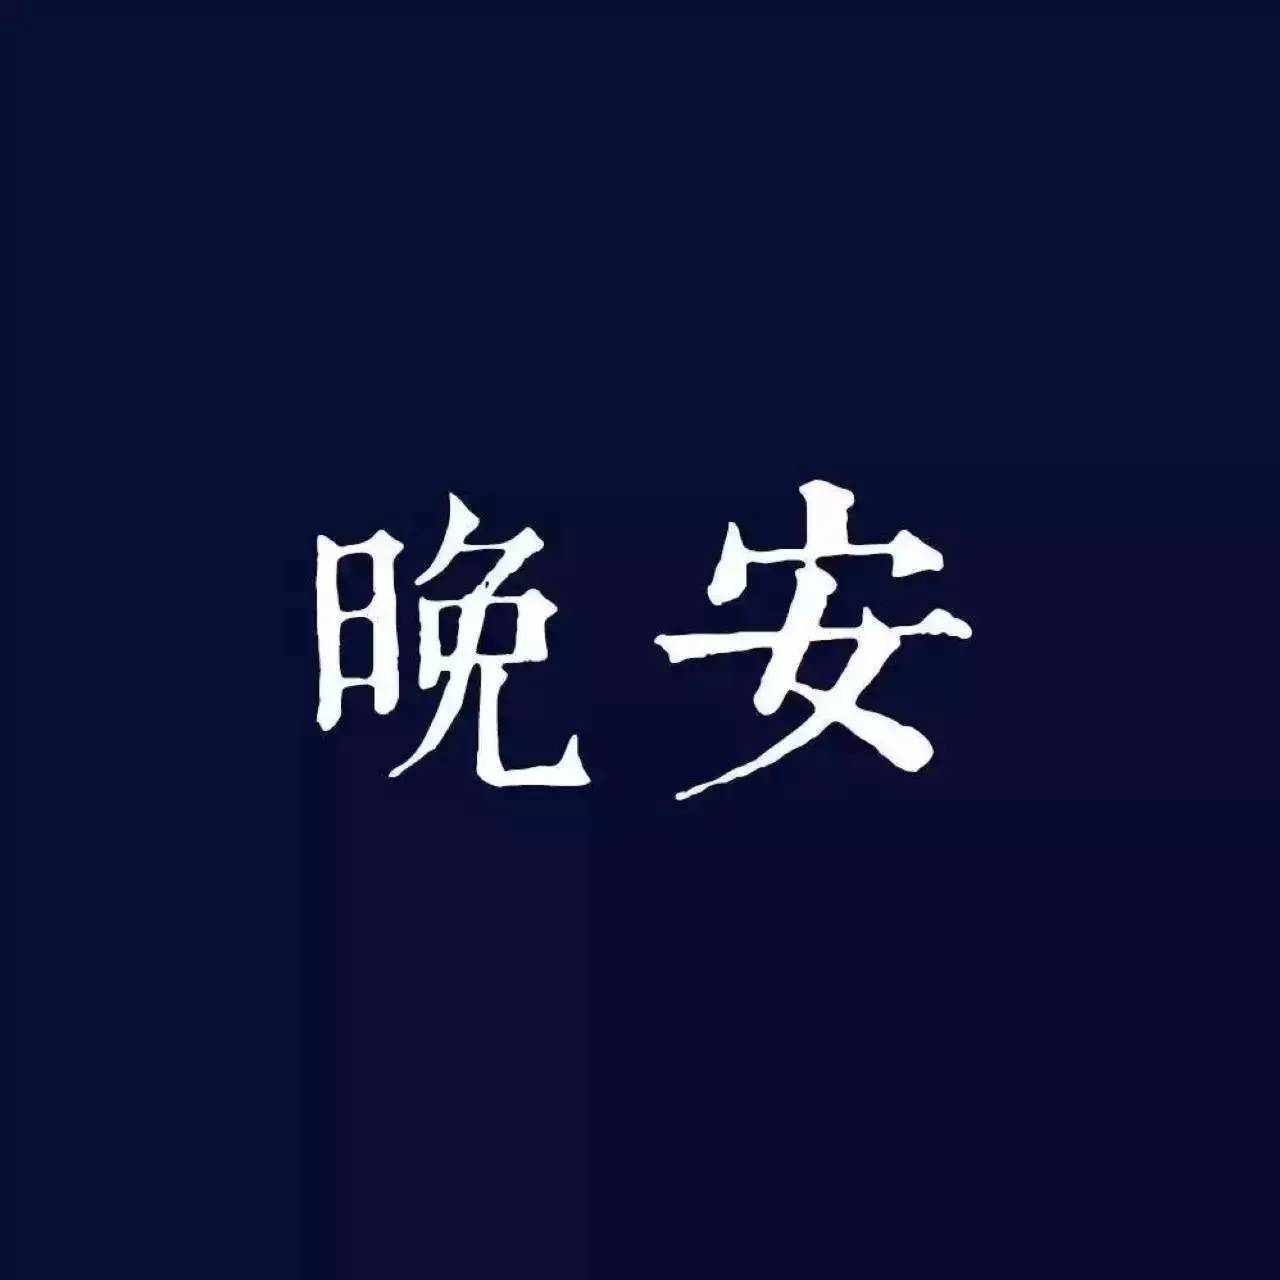 困字单字书法素材中国风字体源文件下载可商用